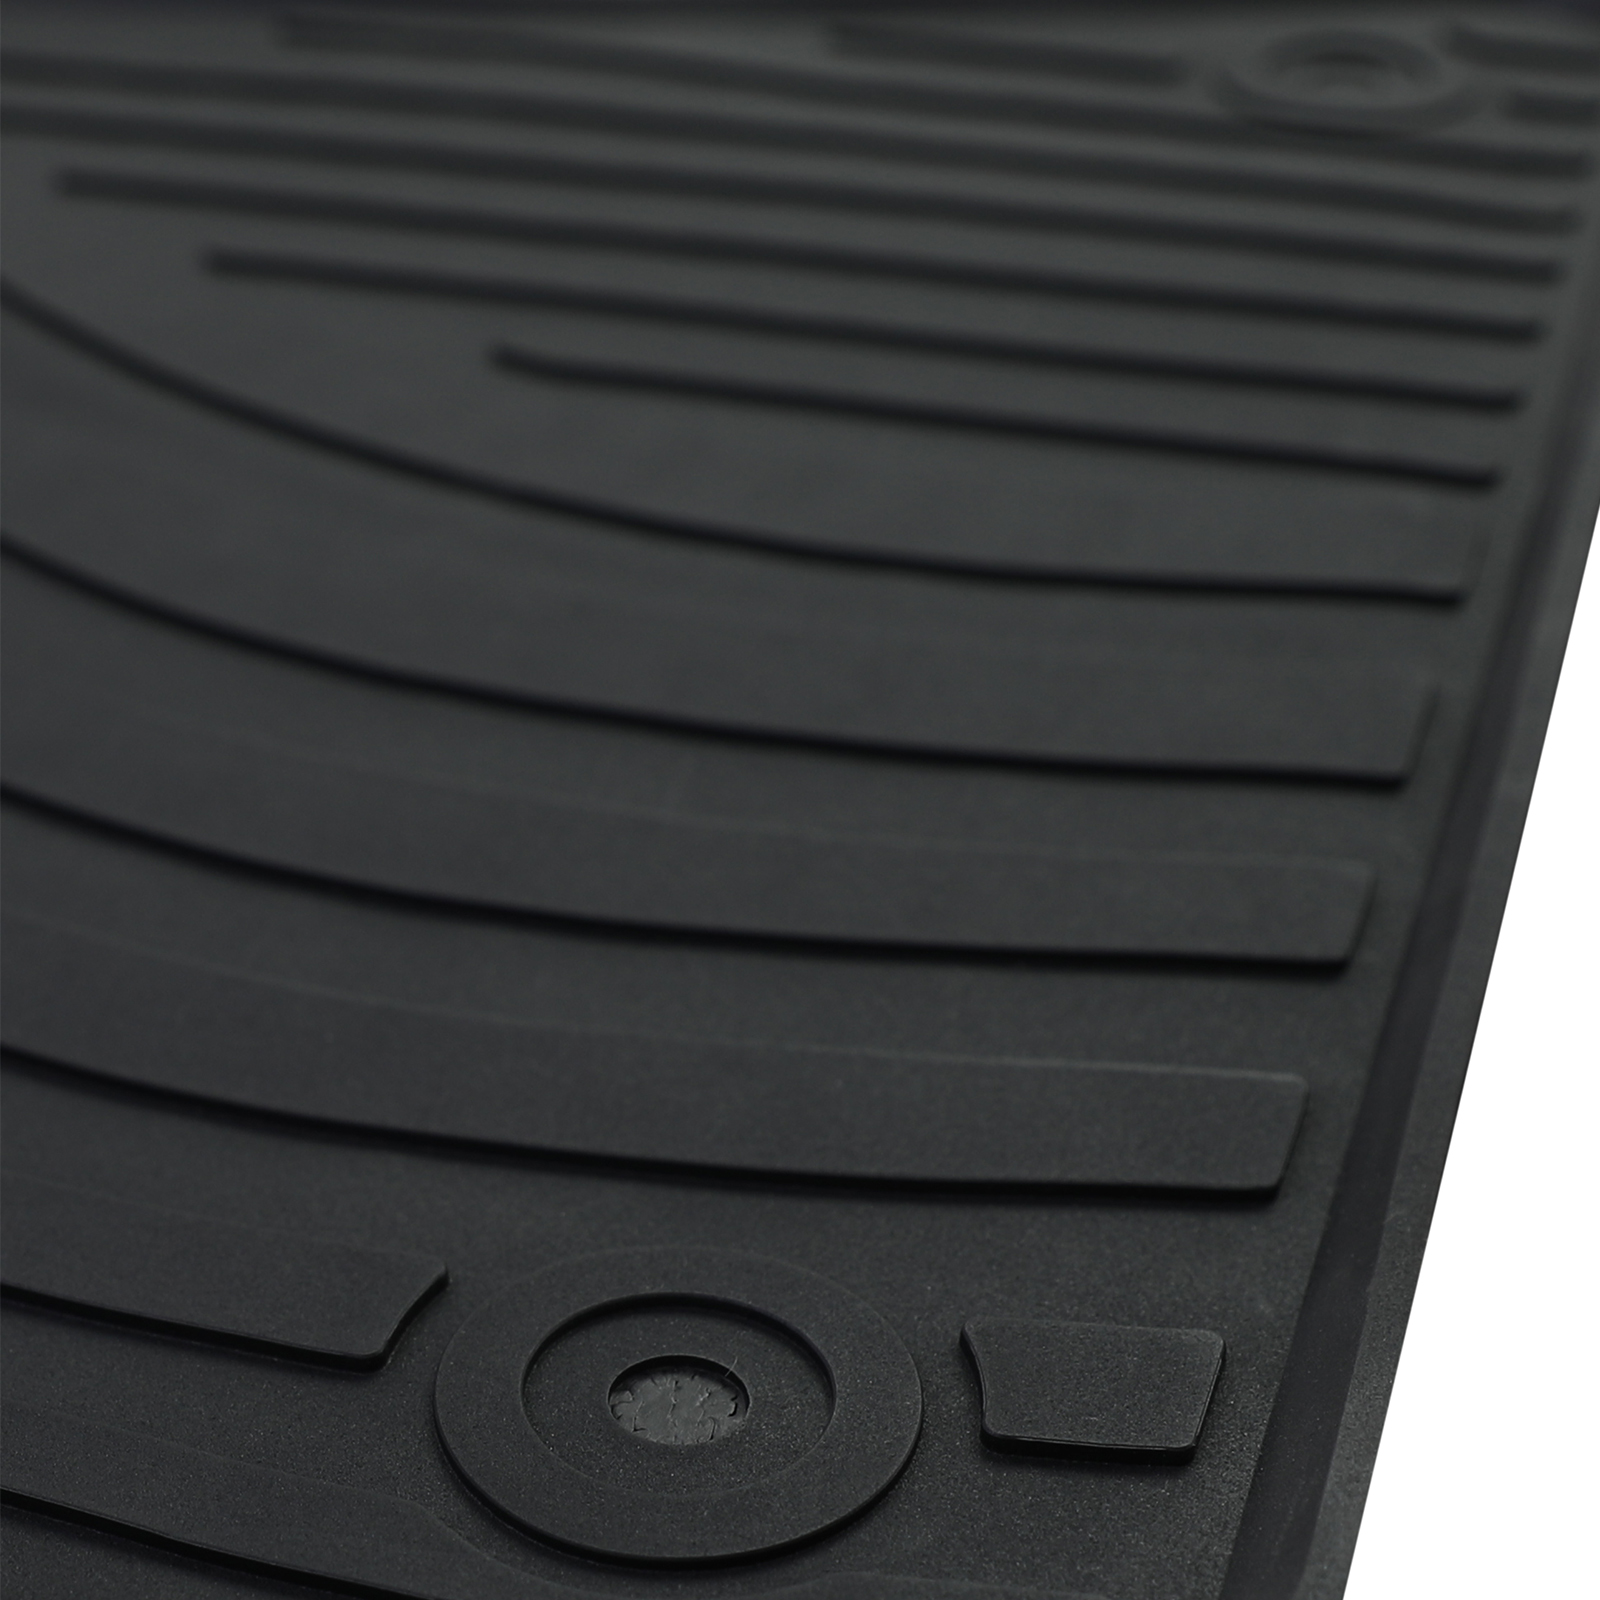 Premium Gummi Fußmatten Schwarz Focus für Ford 10-18 Set kaufen III 4-teilig